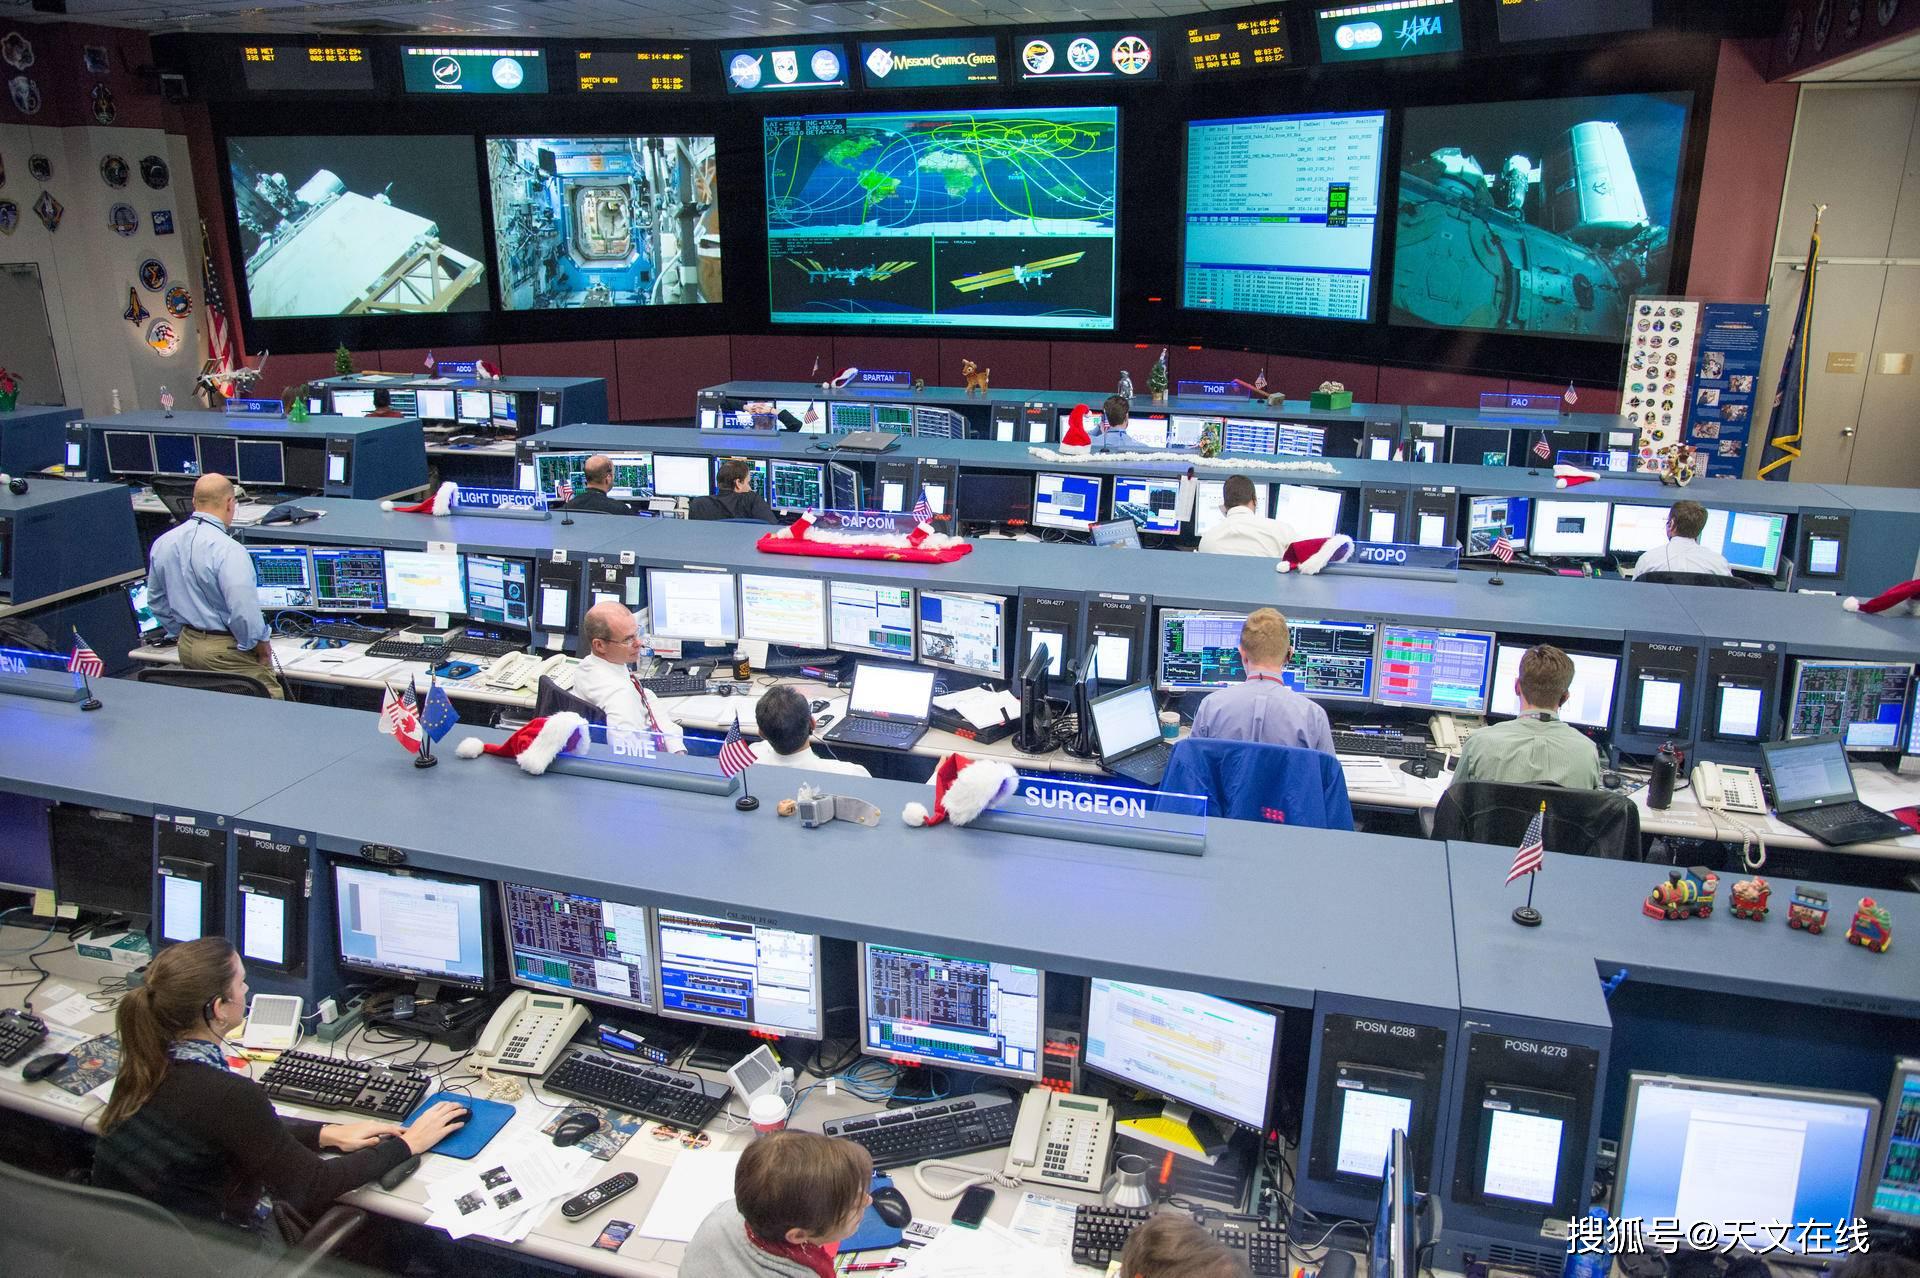 图解:nasa 空间站飞行控制室的飞行控制员 图源:bing控制台是一张配备